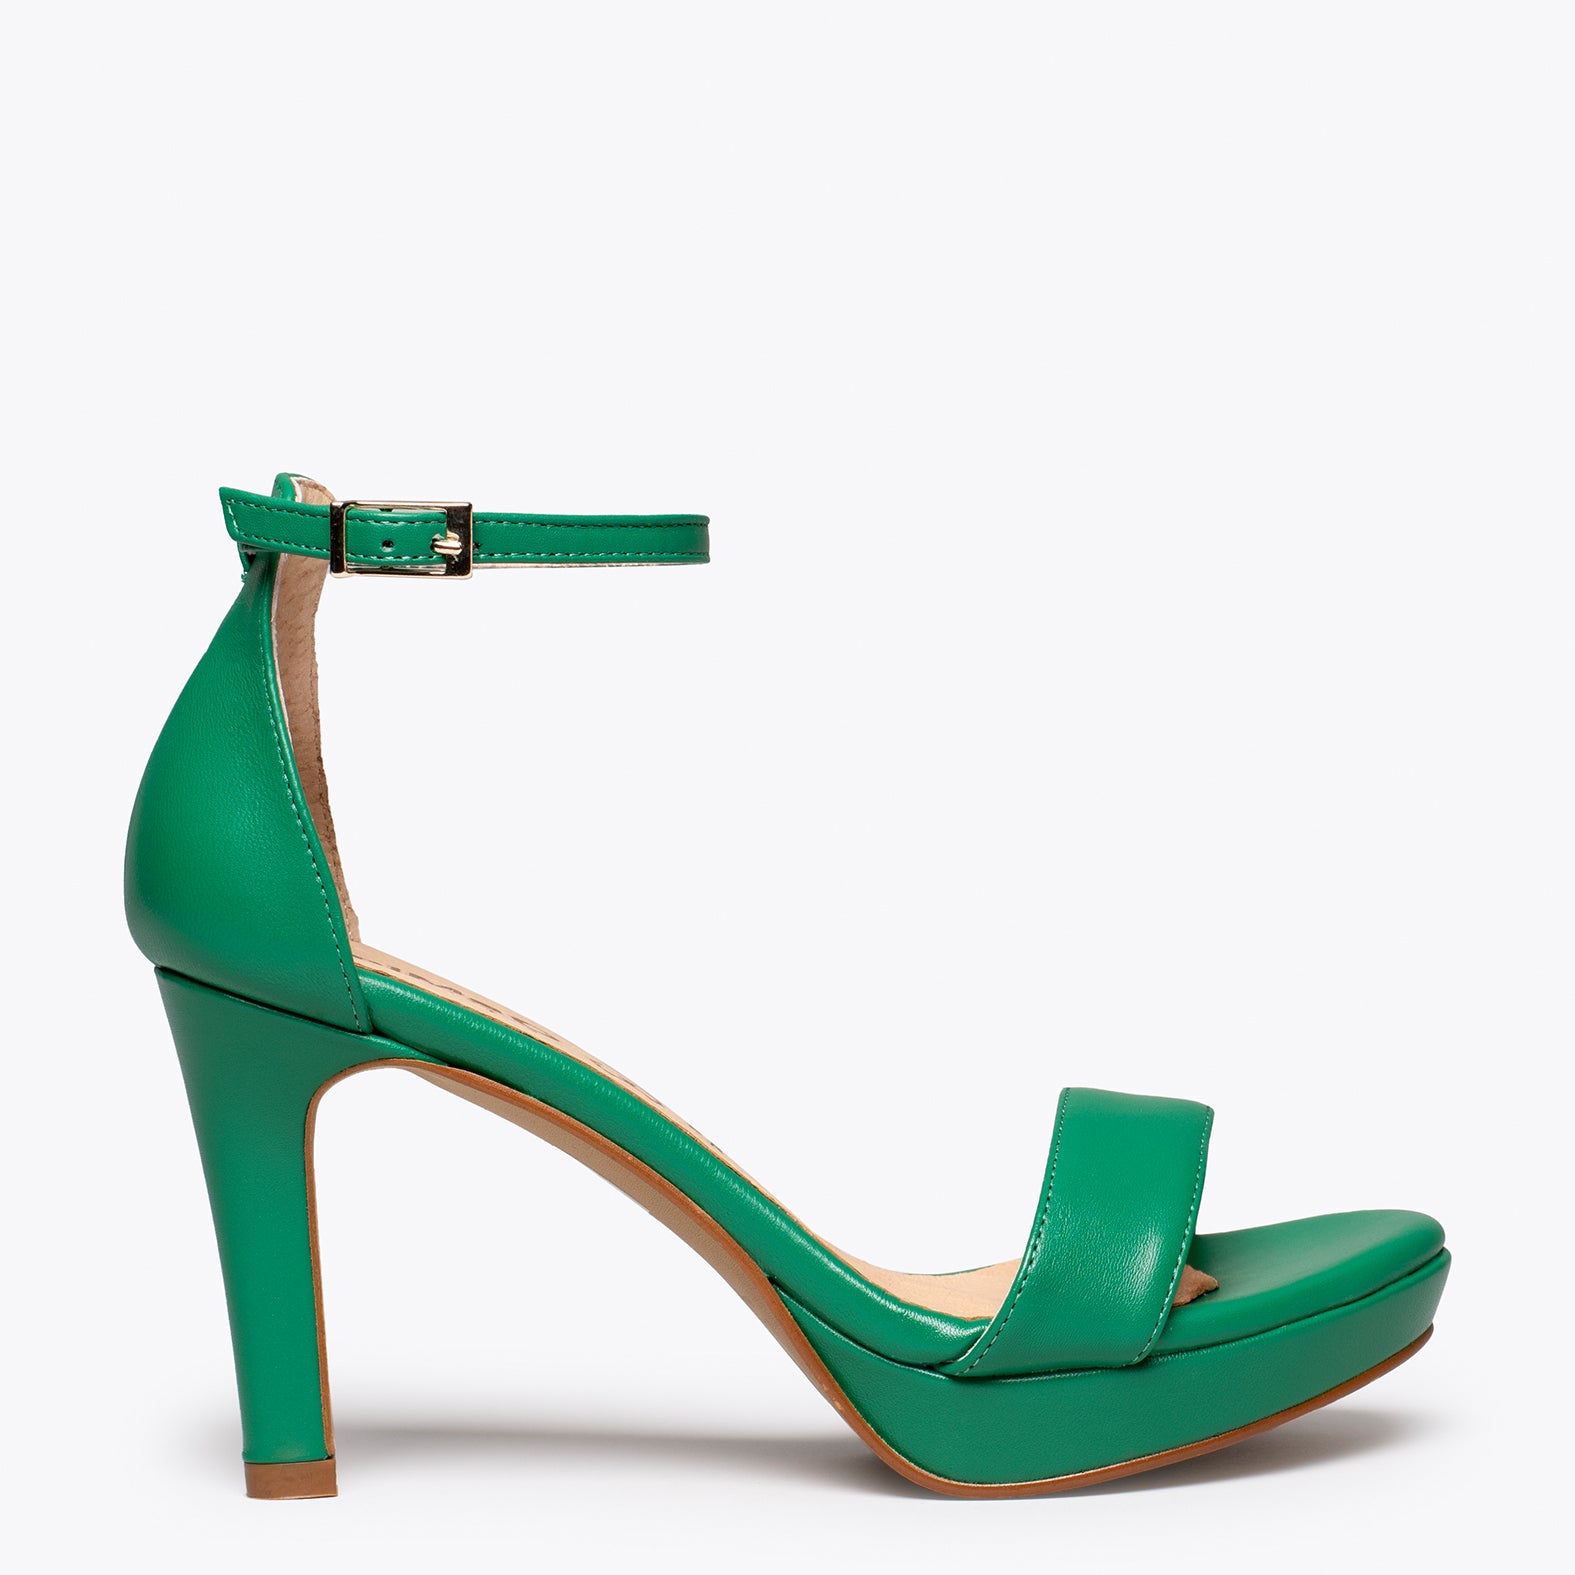 PARTY – GREEN elegant sandal with platform